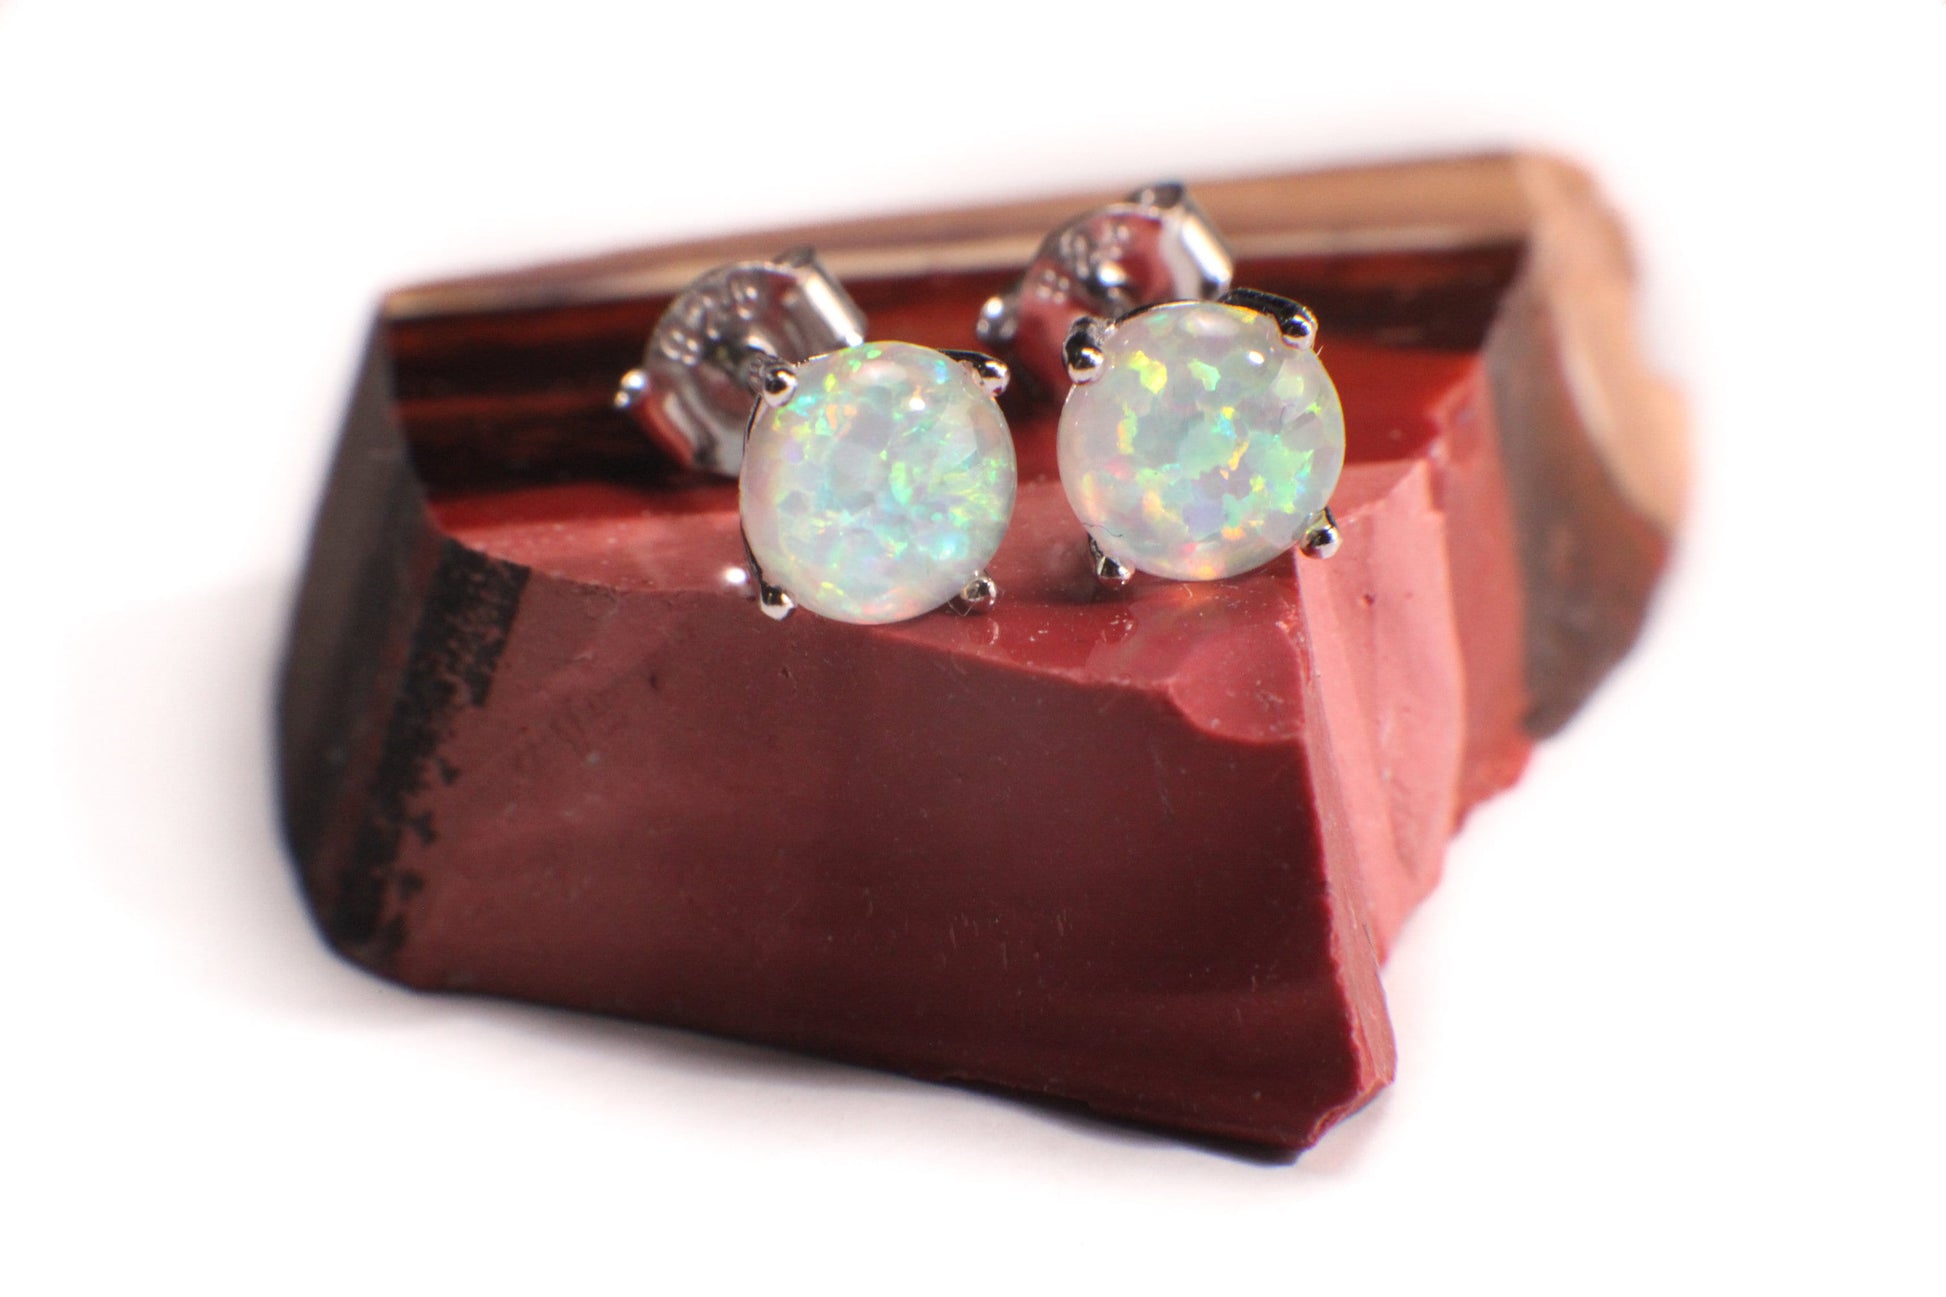 Genuine Ethiopian Fire Opal, Welo Opal, 6mm Stud Earrings in 925 Sterling Silver, AAA Quality Fiery Welo Opal Dainty Elegant Earrings, Gift